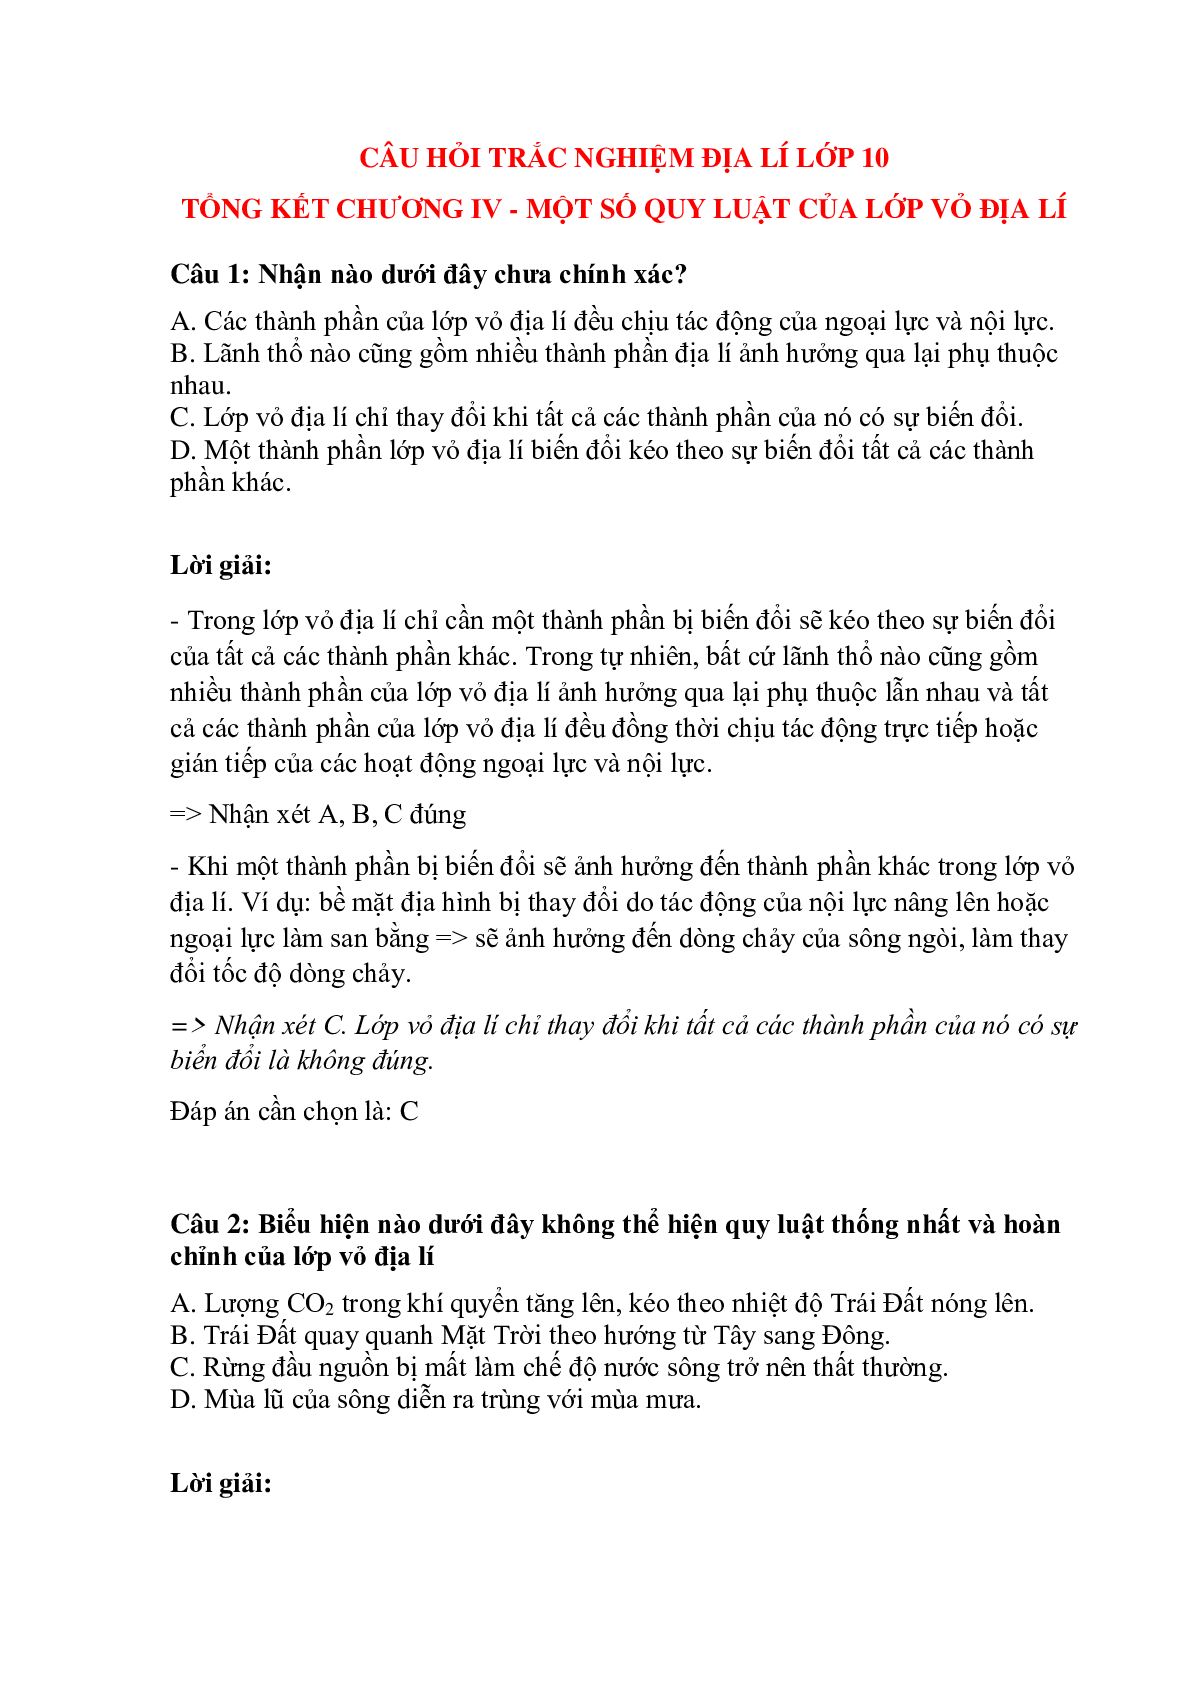 Trắc nghiệm Địa Lí 10 có đáp án: Tổng kết chương 4 - Một số quy luật của lớp vỏ địa lí (trang 1)